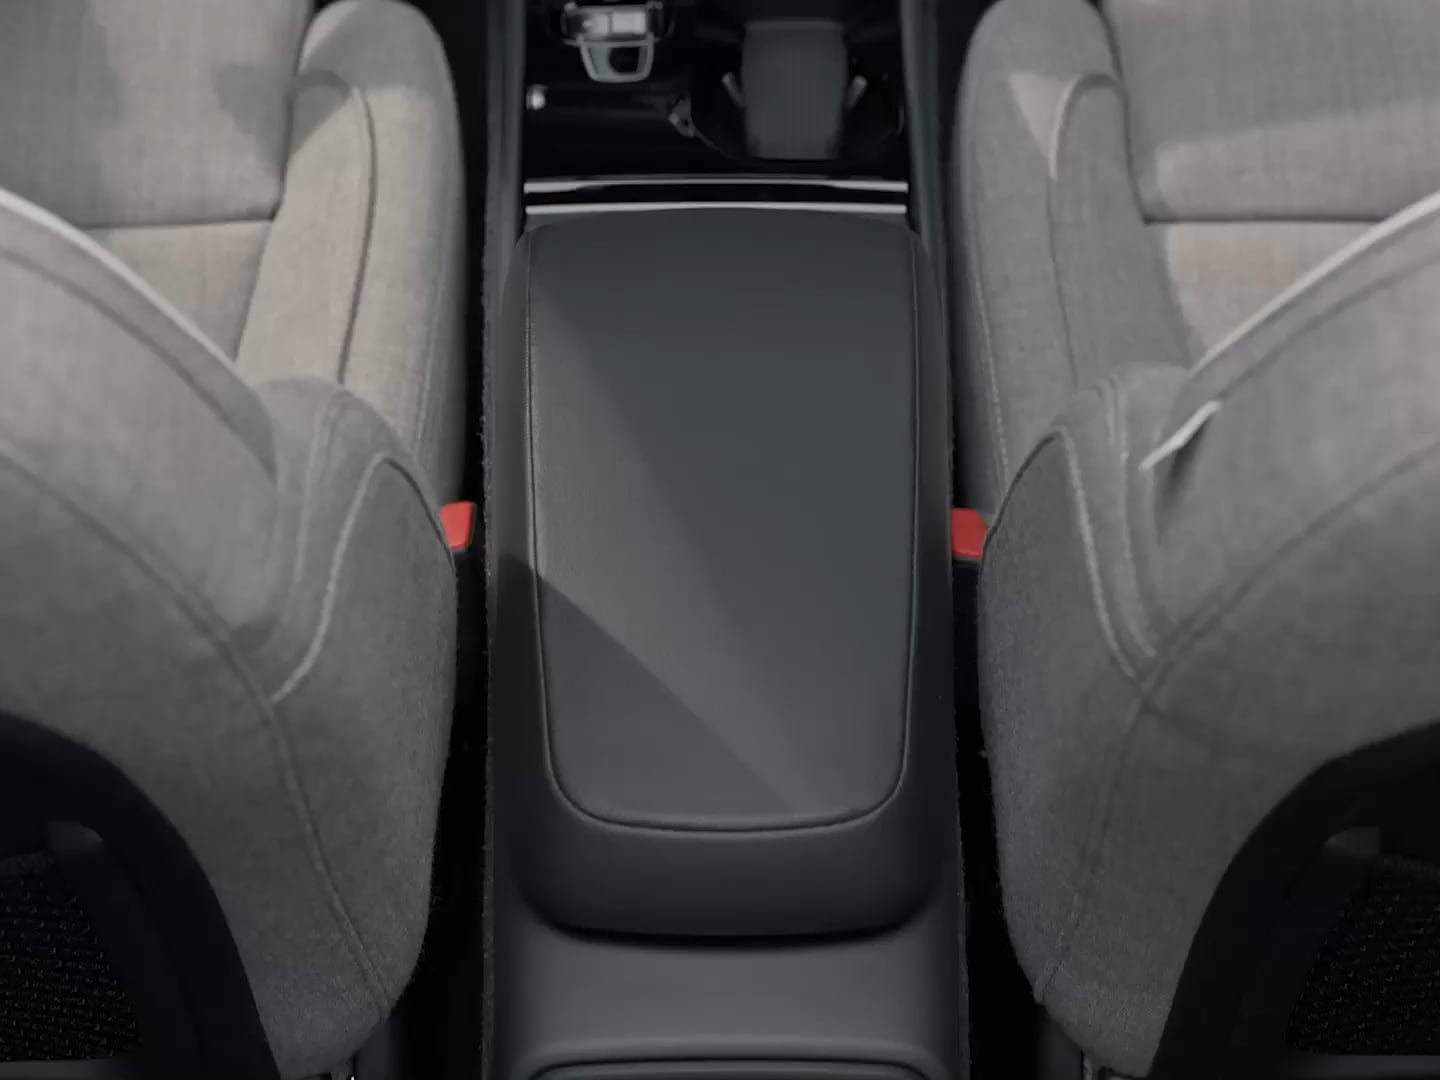 Couvercle de la console centrale servant d’accoudoir entre les sièges avant d’un Volvo XC40 Recharge entièrement électrique.